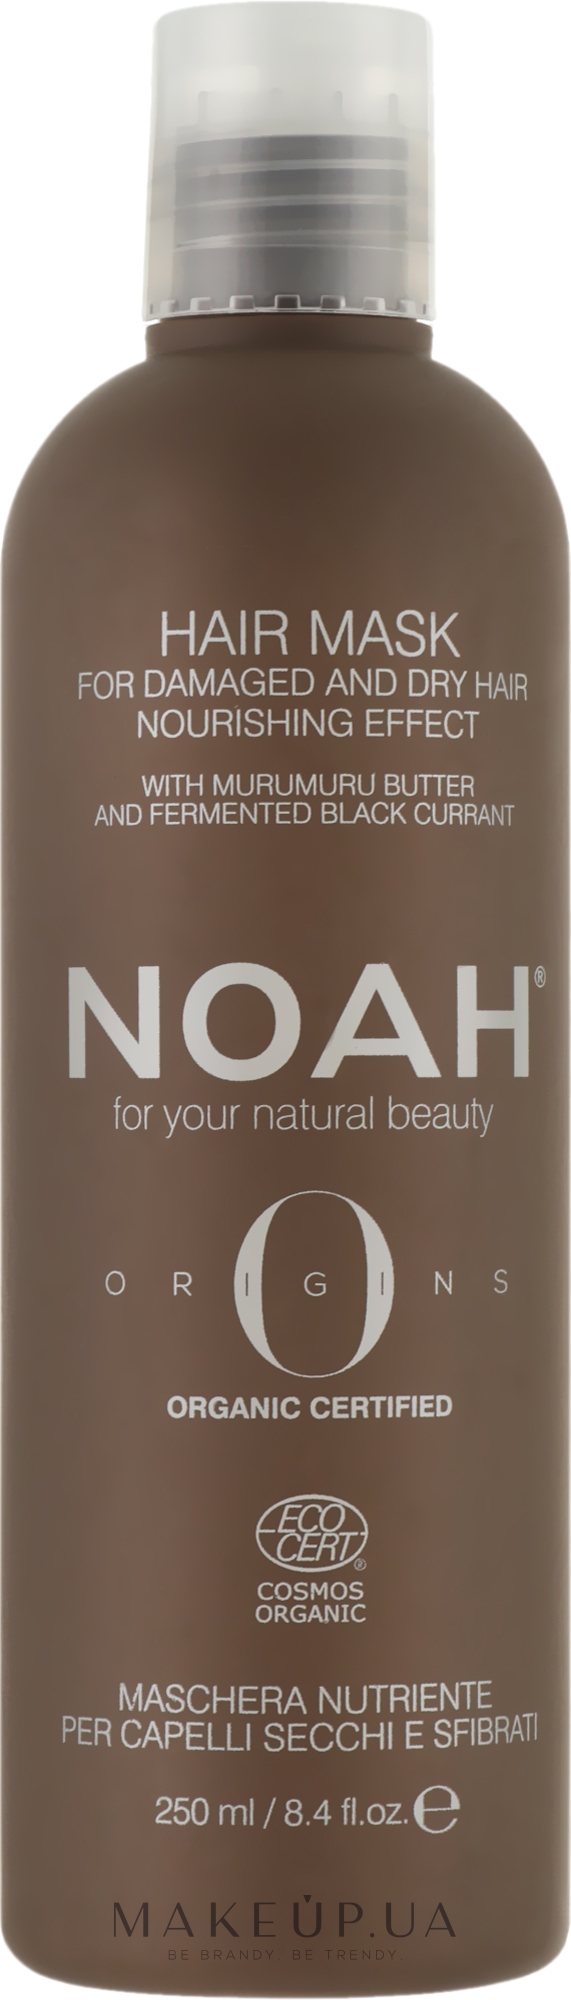 Питательная маска для волос - Noah Origins Nourishing Hair Mask — фото 250ml